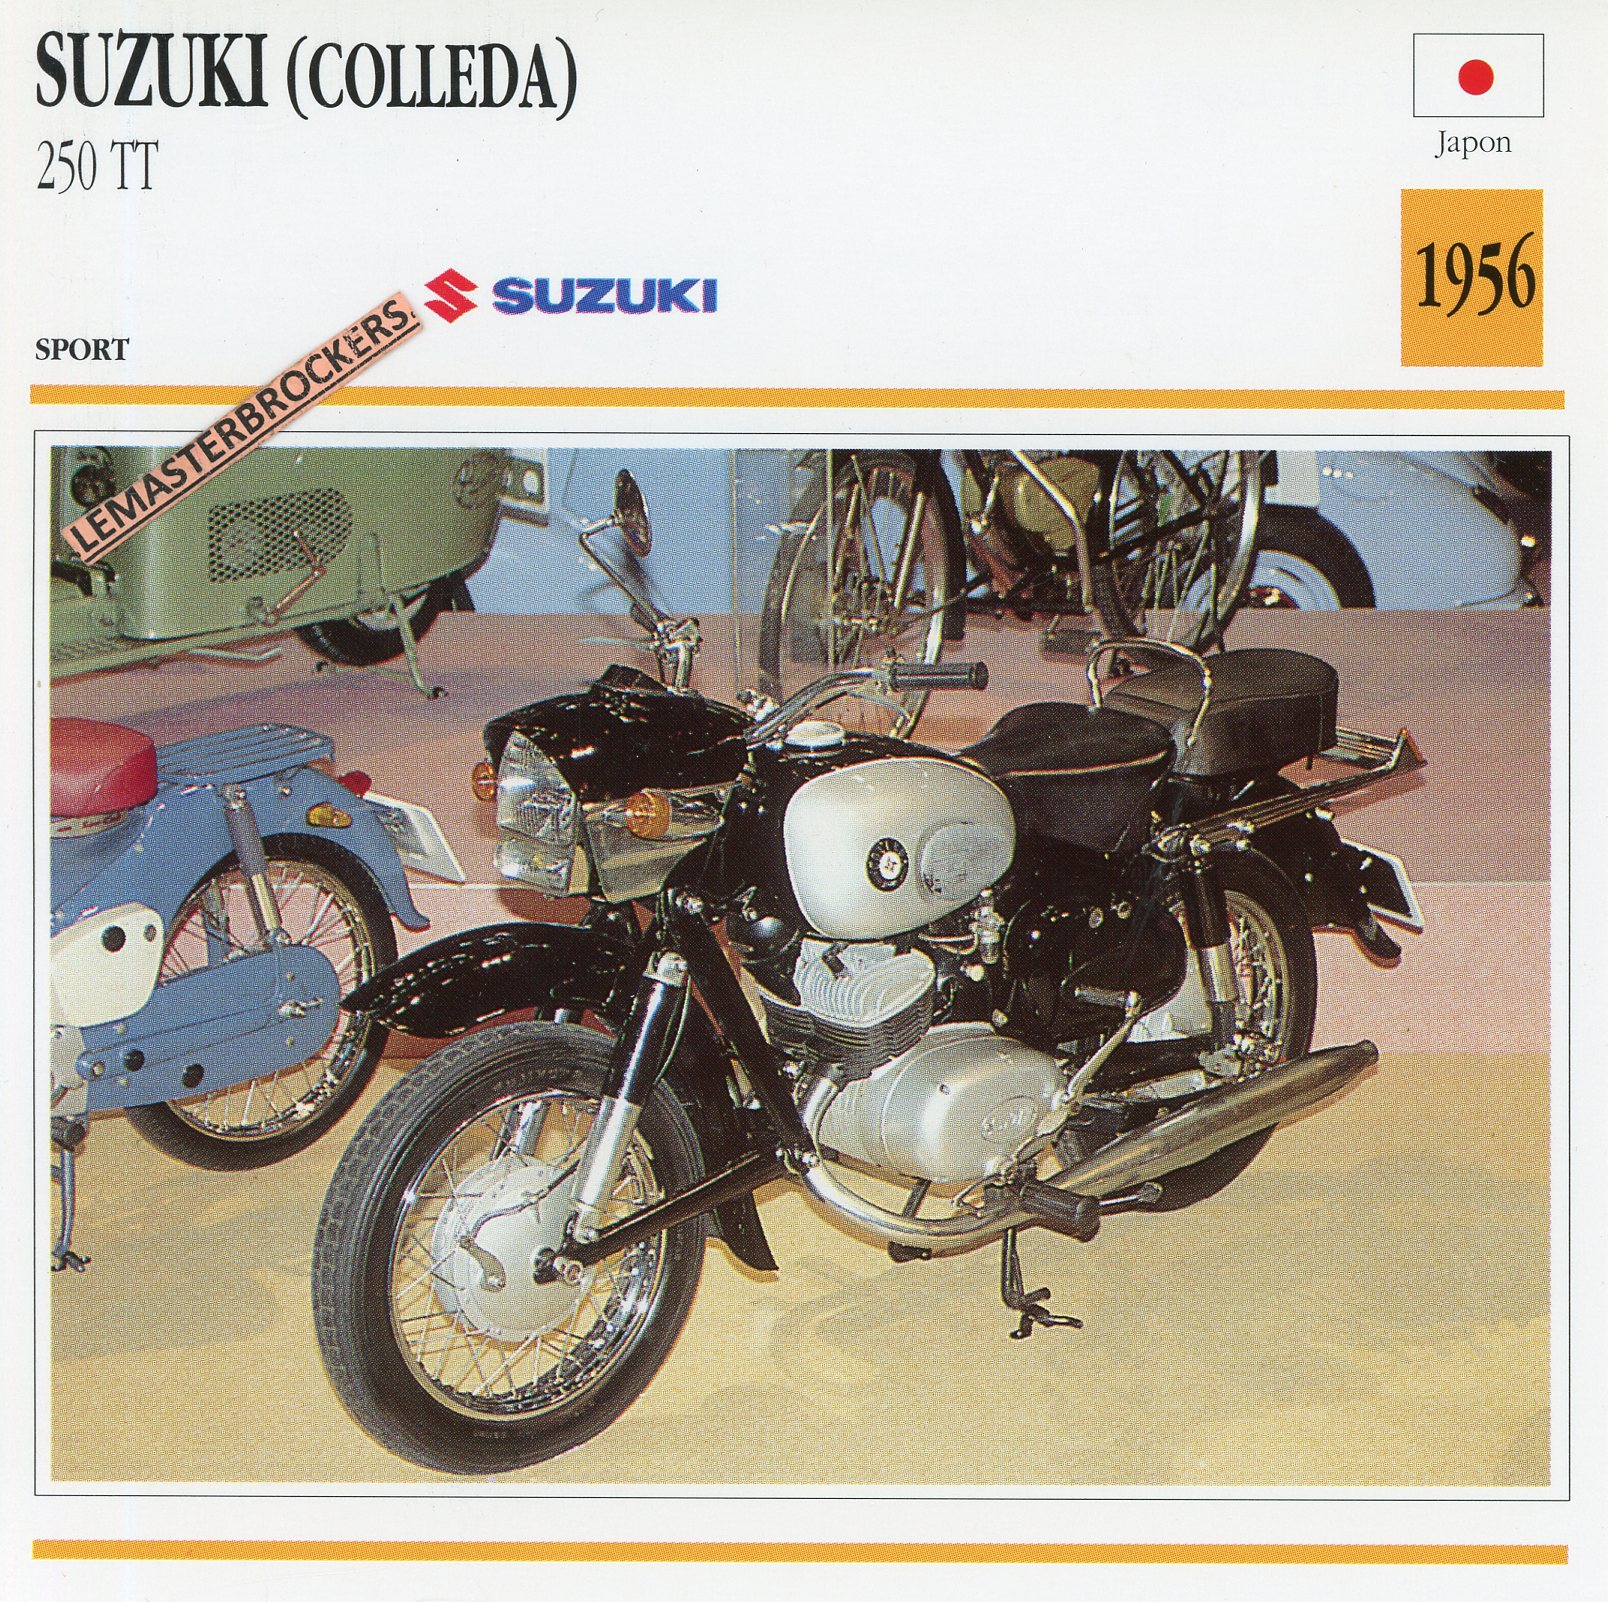 SUZUKI-250-TT-1955-COLLEDA-FICHE-MOTO-LEMASTERBROCKERS